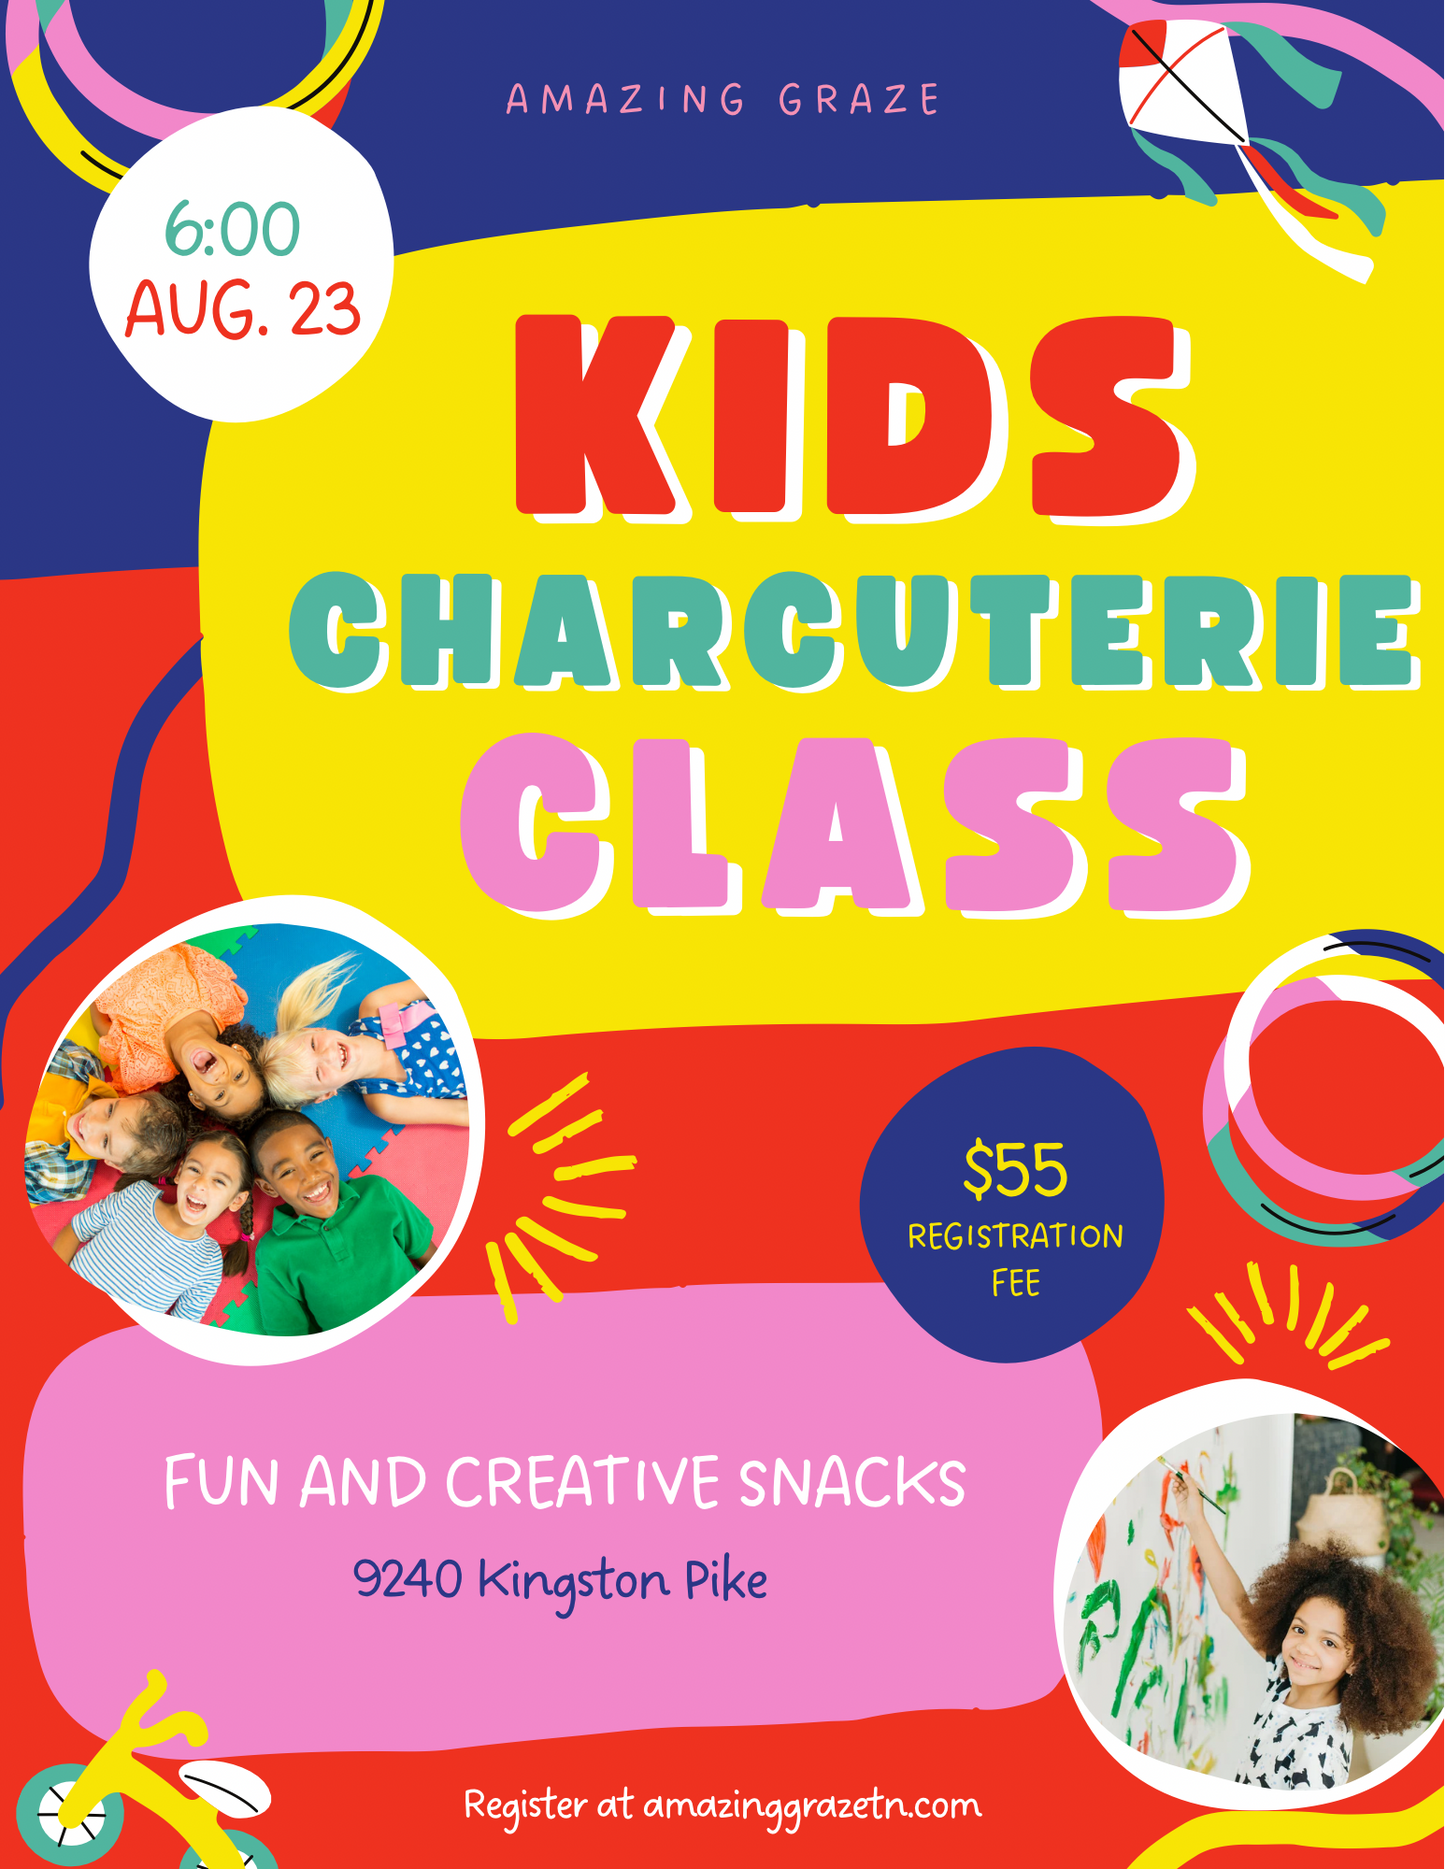 Kids Charcuterie Class Wednesday, August 23